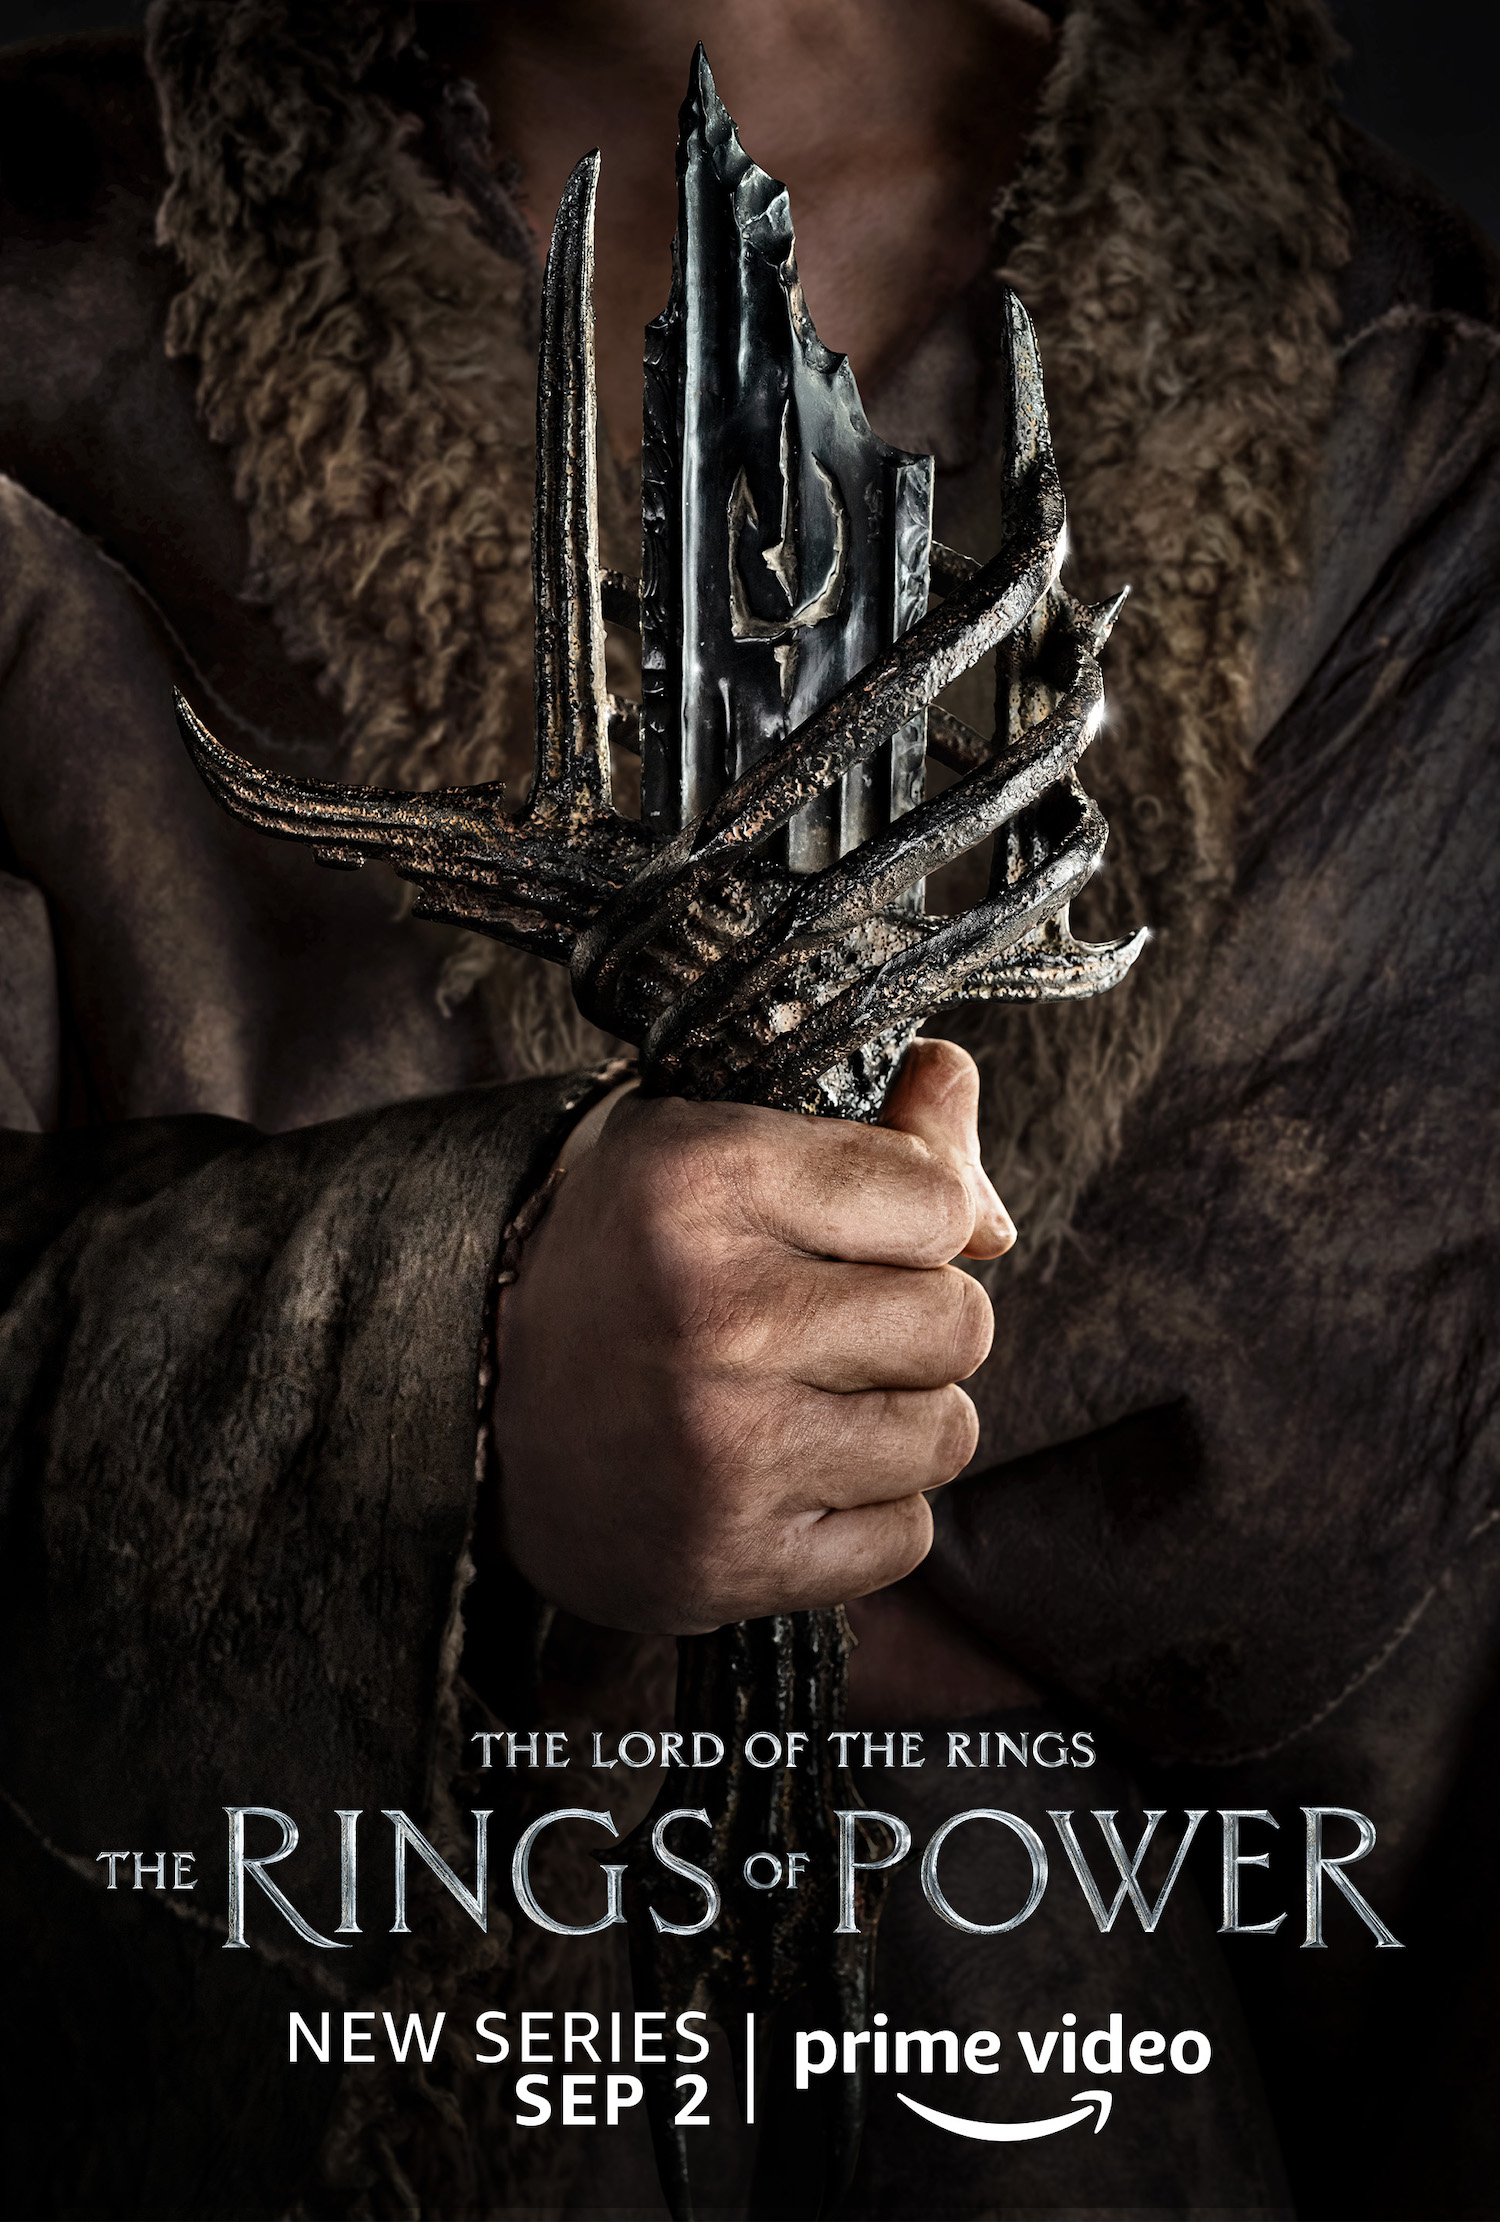 Tyroe Muhafidin in LOTR The Rings of Power poster